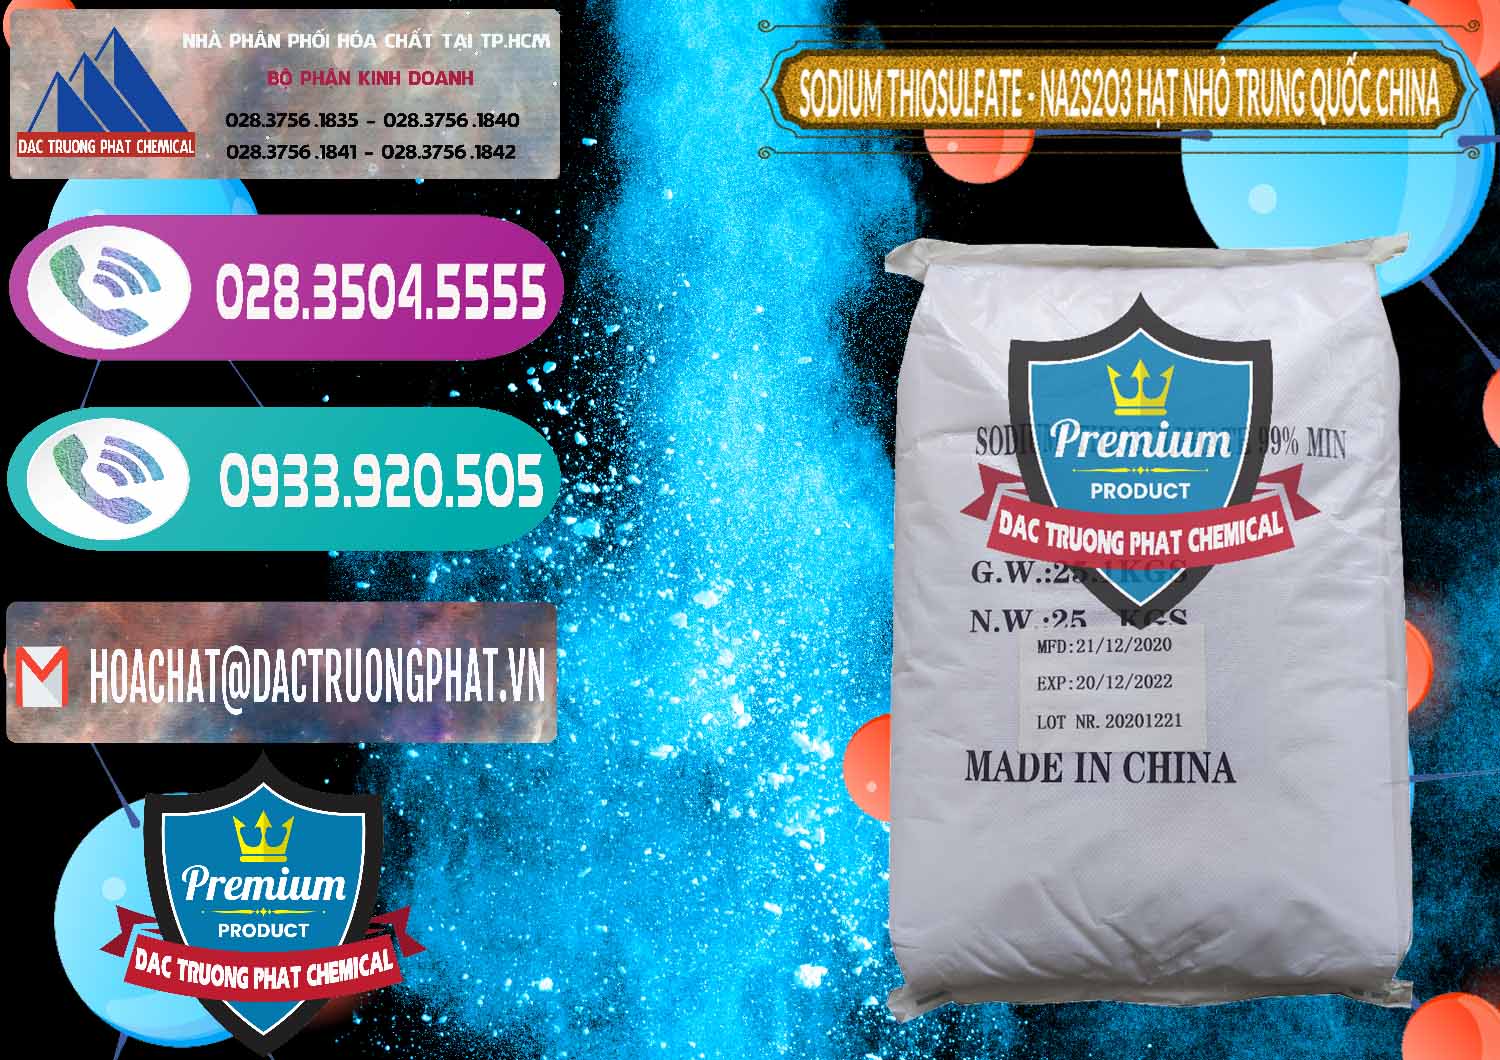 Nơi bán _ cung ứng Sodium Thiosulfate - NA2S2O3 Hạt Nhỏ Trung Quốc China - 0204 - Đơn vị cung cấp và bán hóa chất tại TP.HCM - hoachatxulynuoc.com